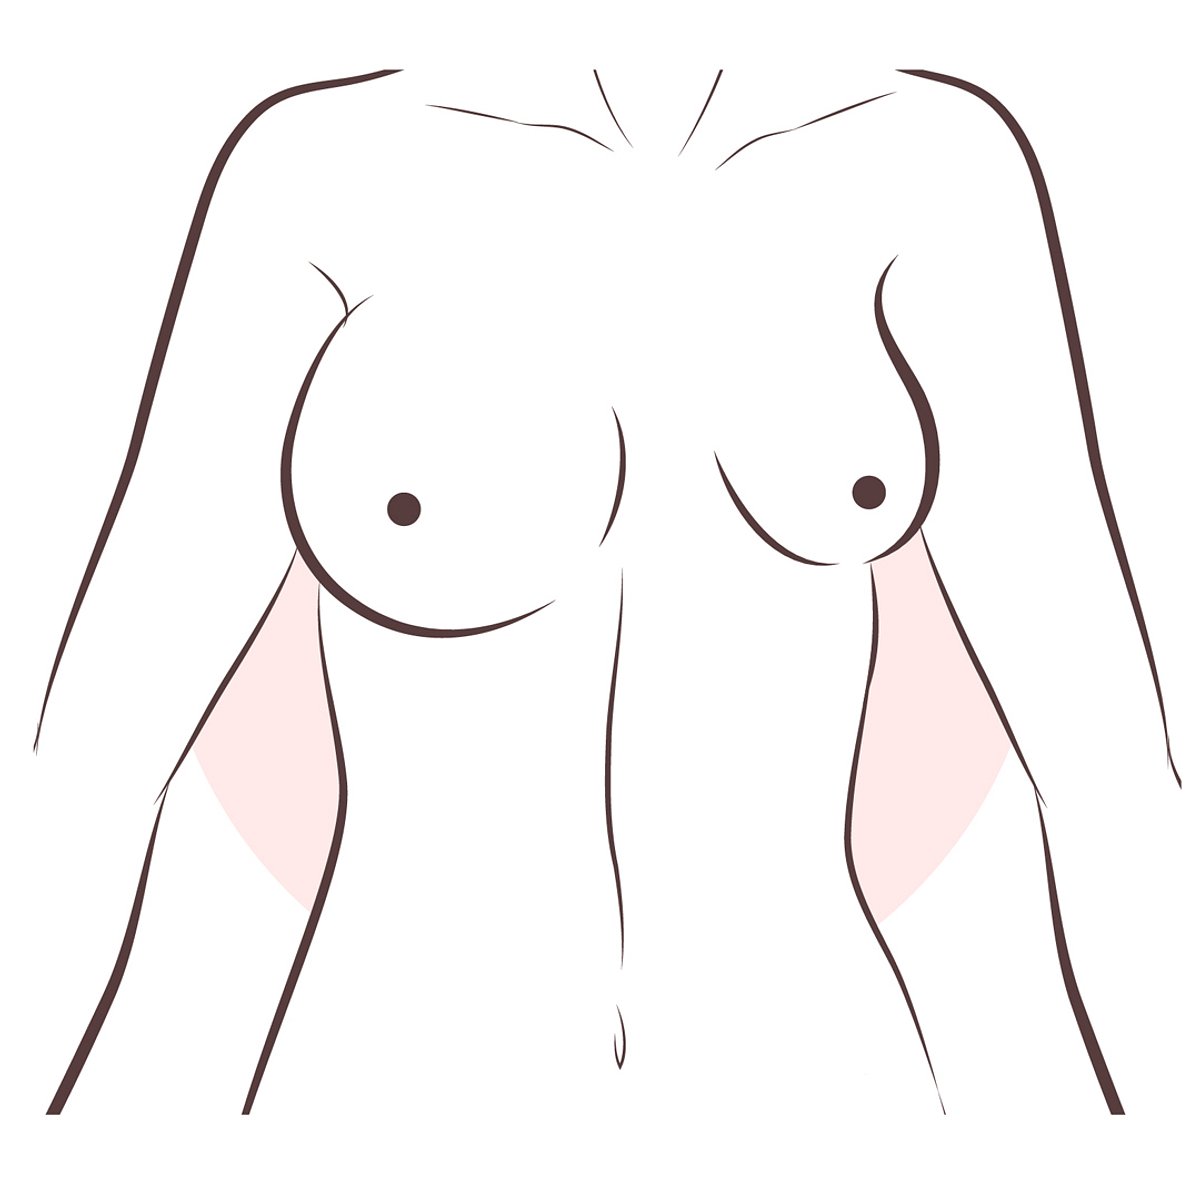 Brüste Form unterschiedlich